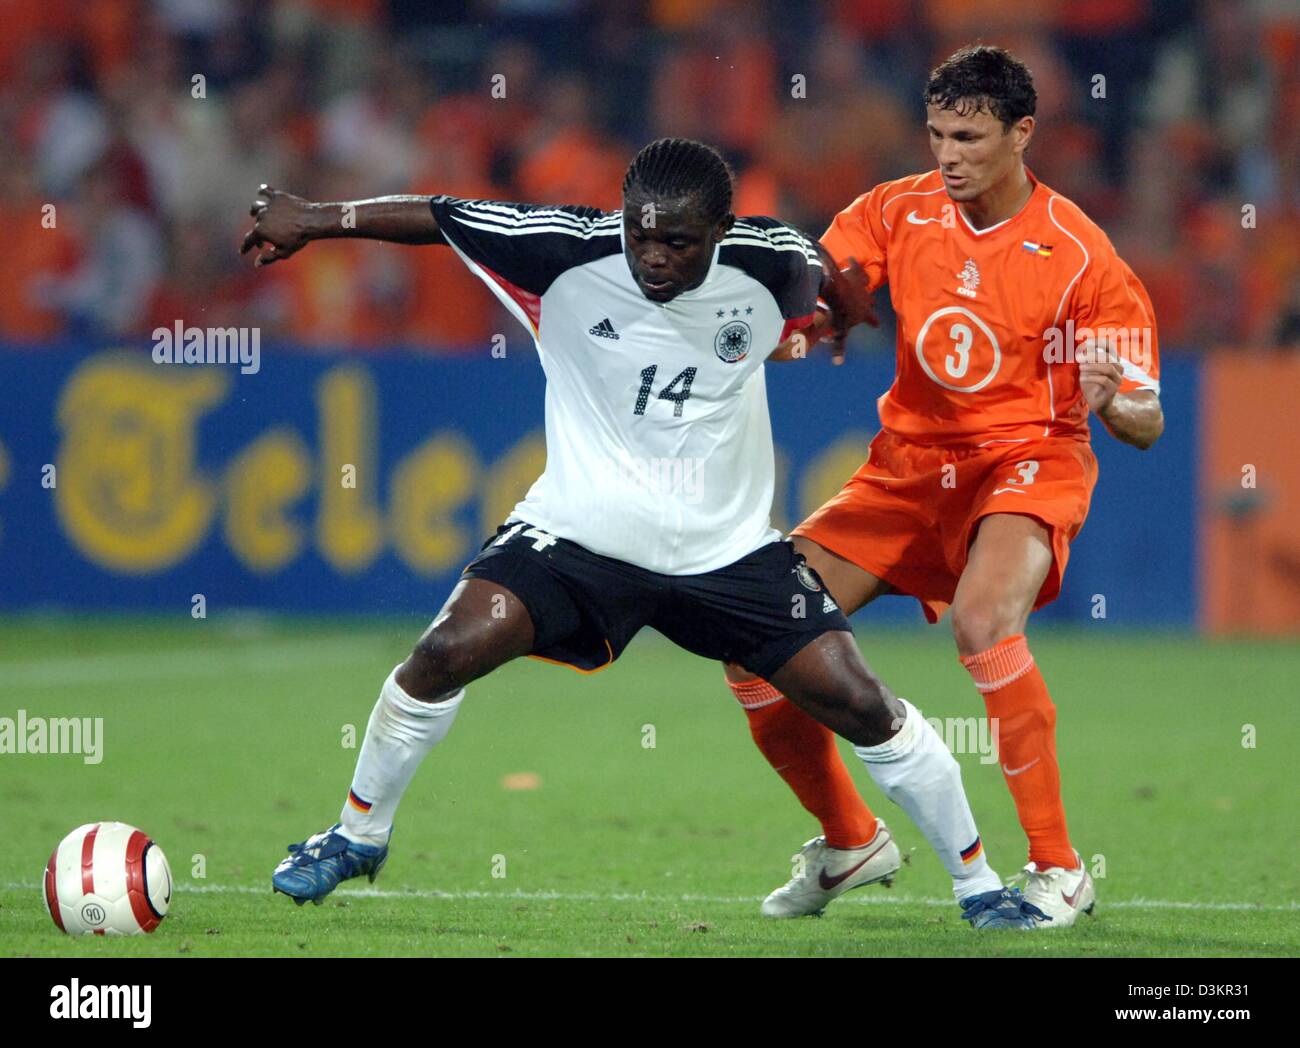 (Afp) - Le joueur de soccer national allemand Gerald Asamoah (L) se bat pour la balle avec le Néerlandais Khalid Boulahrouz joueur national pendant le match amical Pays-bas contre l'Allemagne à la 'De Kuip' Stadium à Rotterdam, Pays-Bas, le 17 août 2005. Le jeu est terminé dans un 2-2 draw. Photo : Bernd Weissbrod Banque D'Images